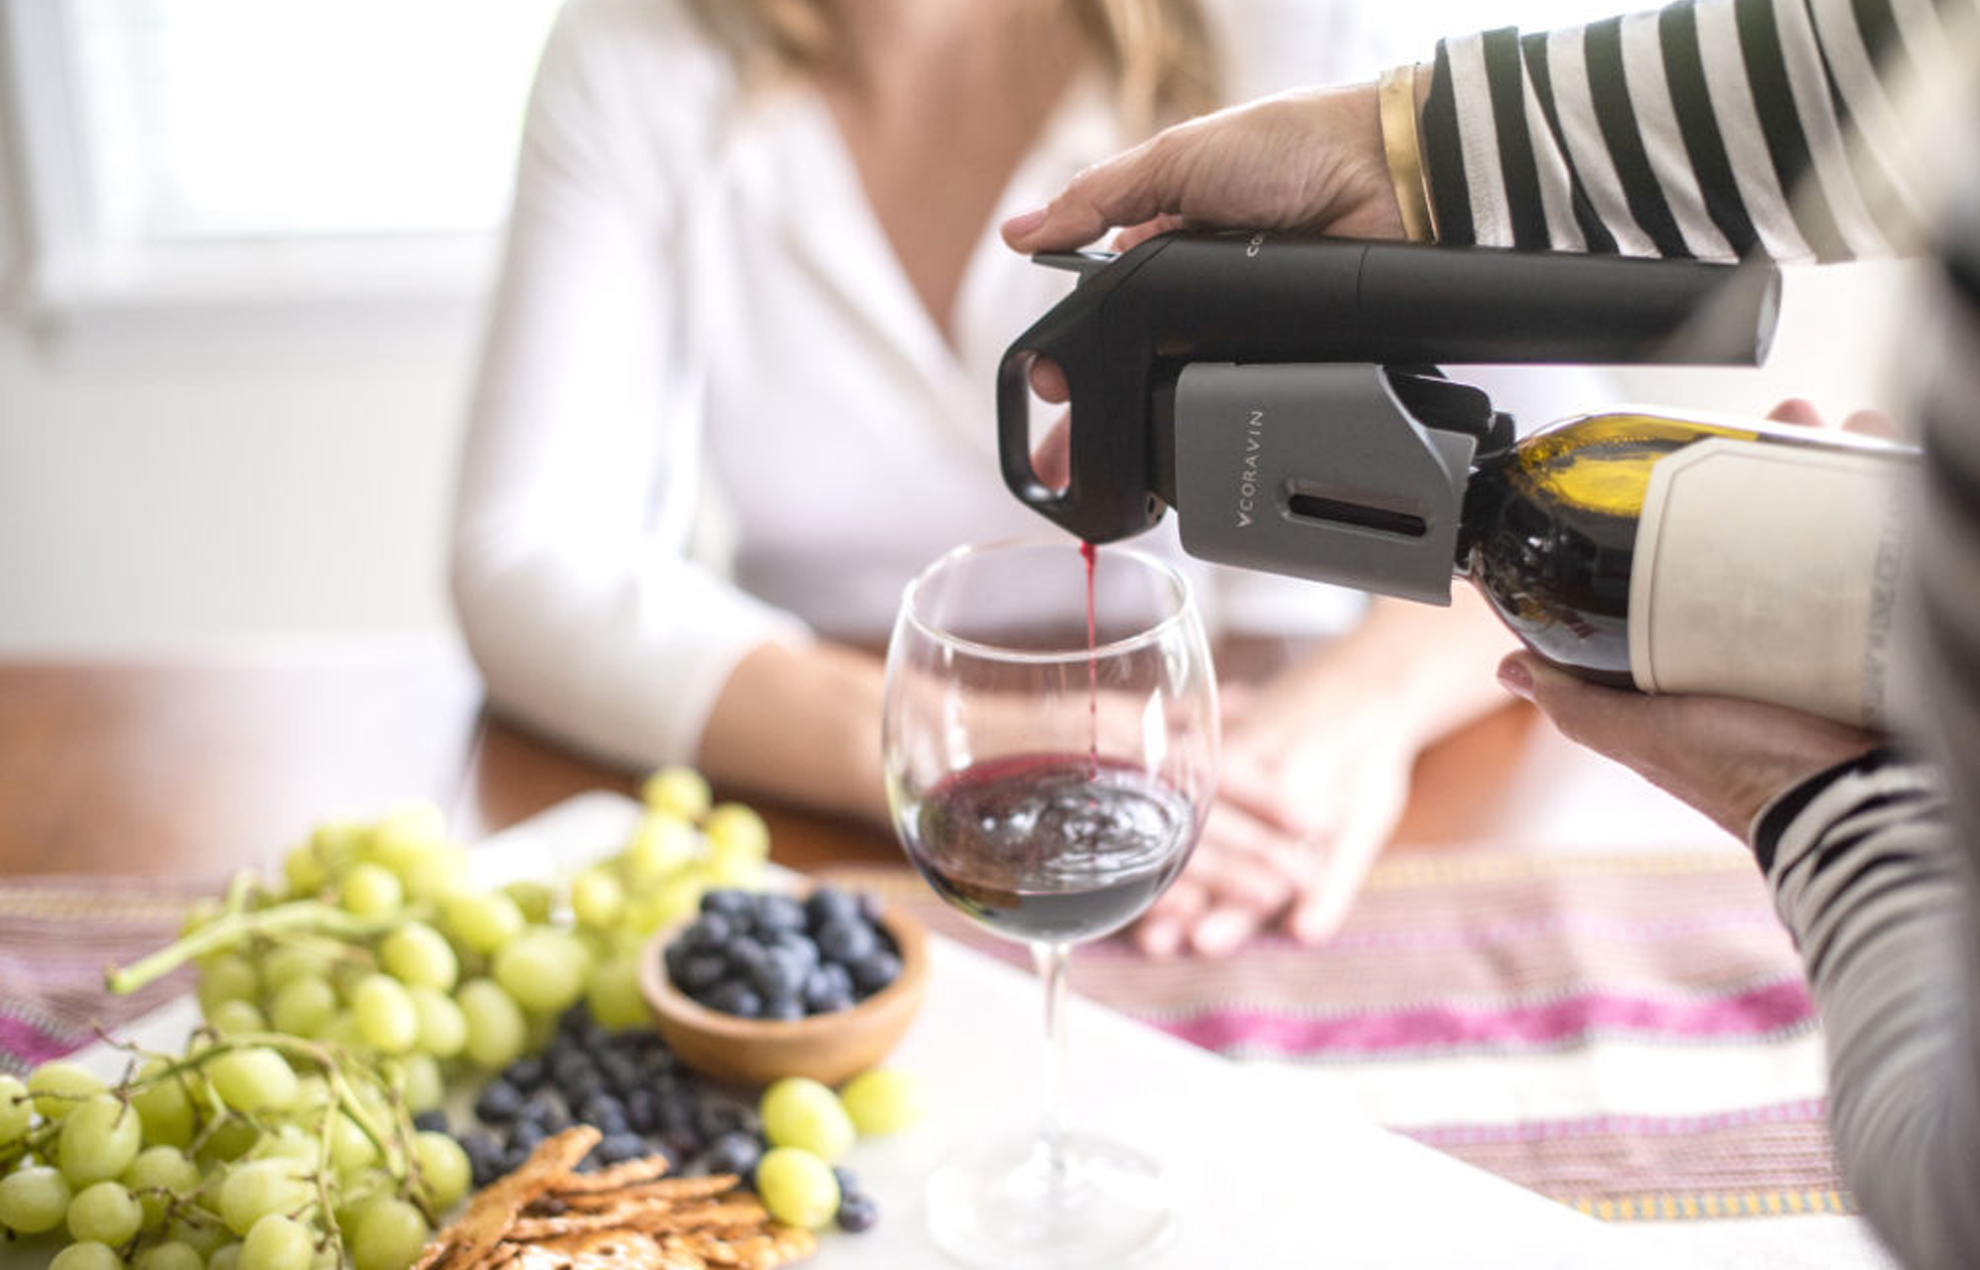 Rotwein wird mit einem Coravin Weinsystem ausgeschenkt, Frau im Hintergrund an einem mit Weintrauben gedeckten Tisch
